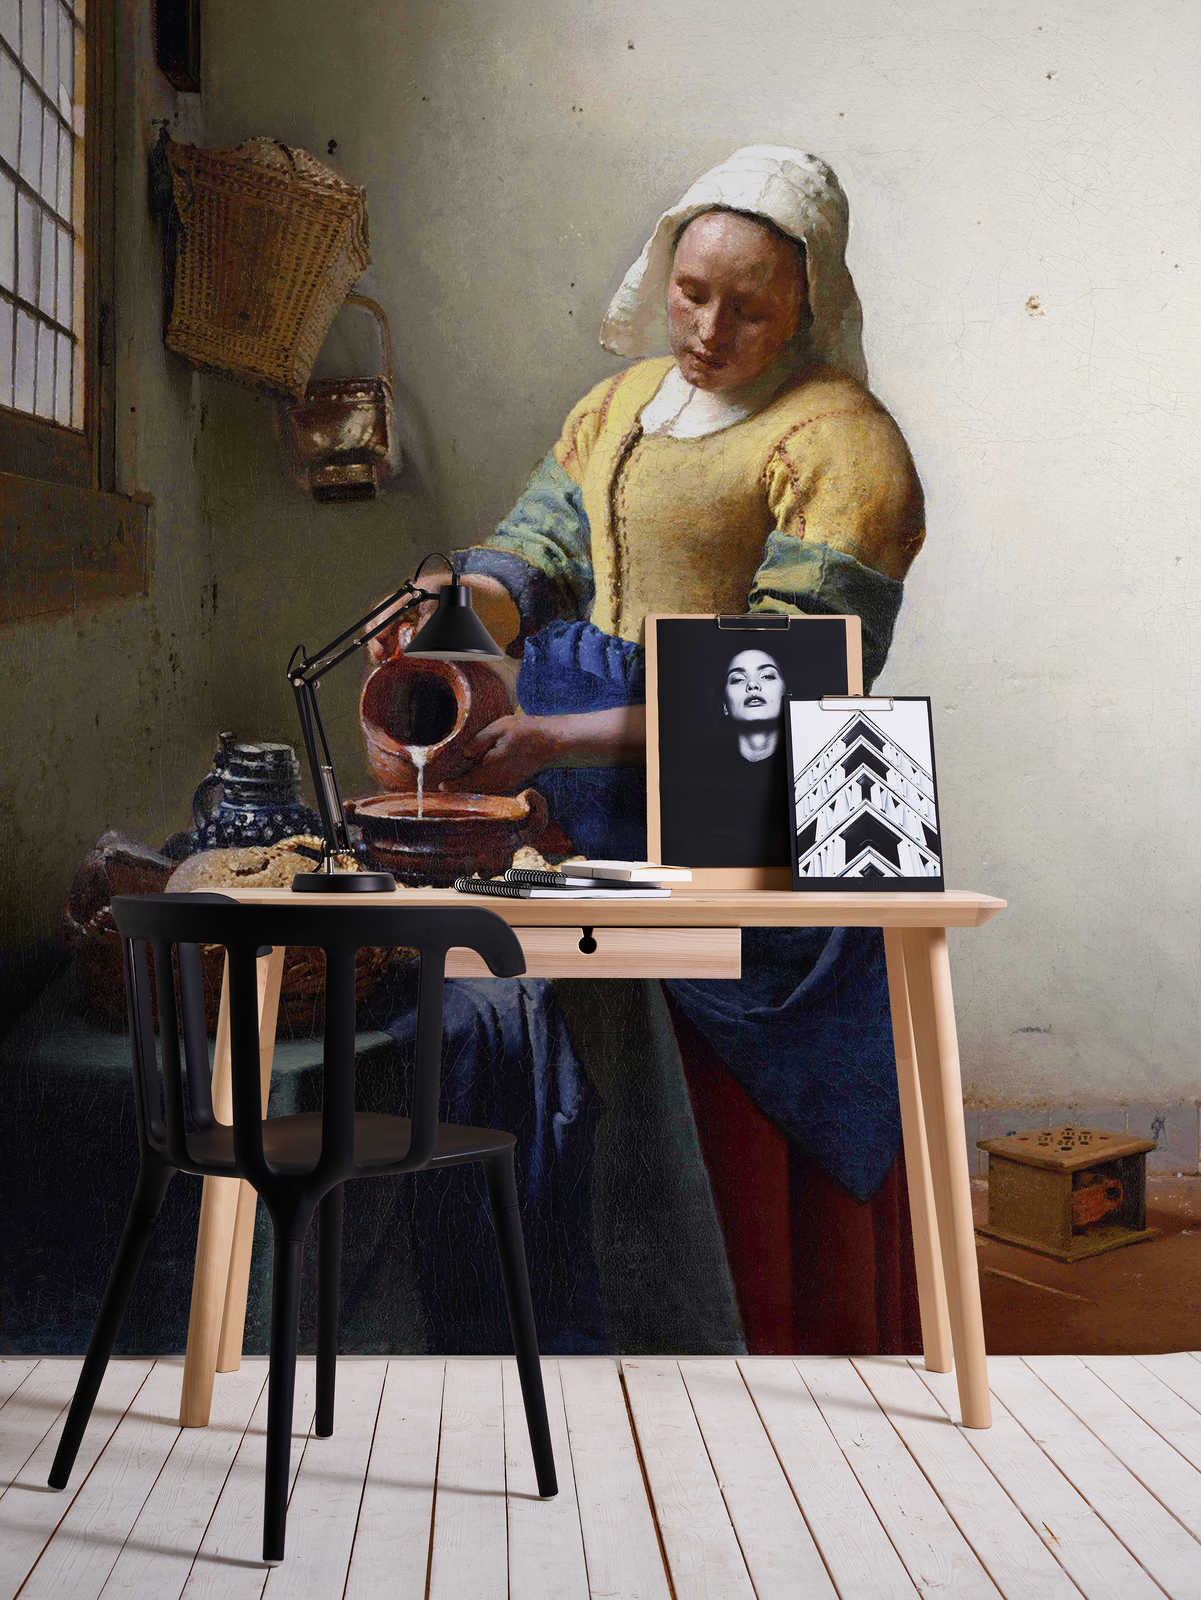             Fotomurali "Cameriera con brocca di latte" di Jan Vermeer
        